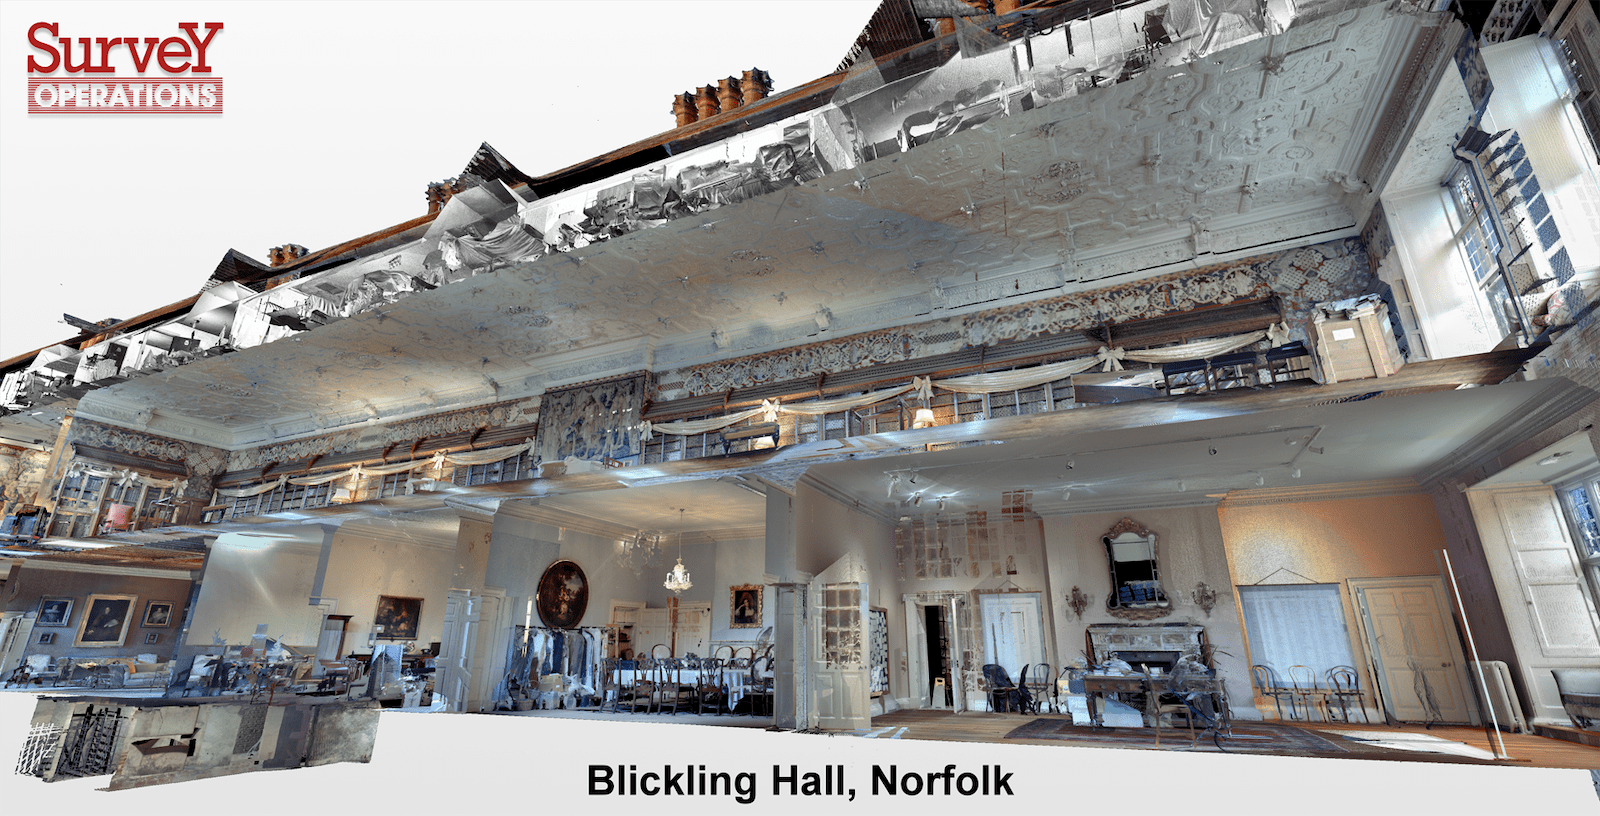 Blcikling Hall Survey - internal